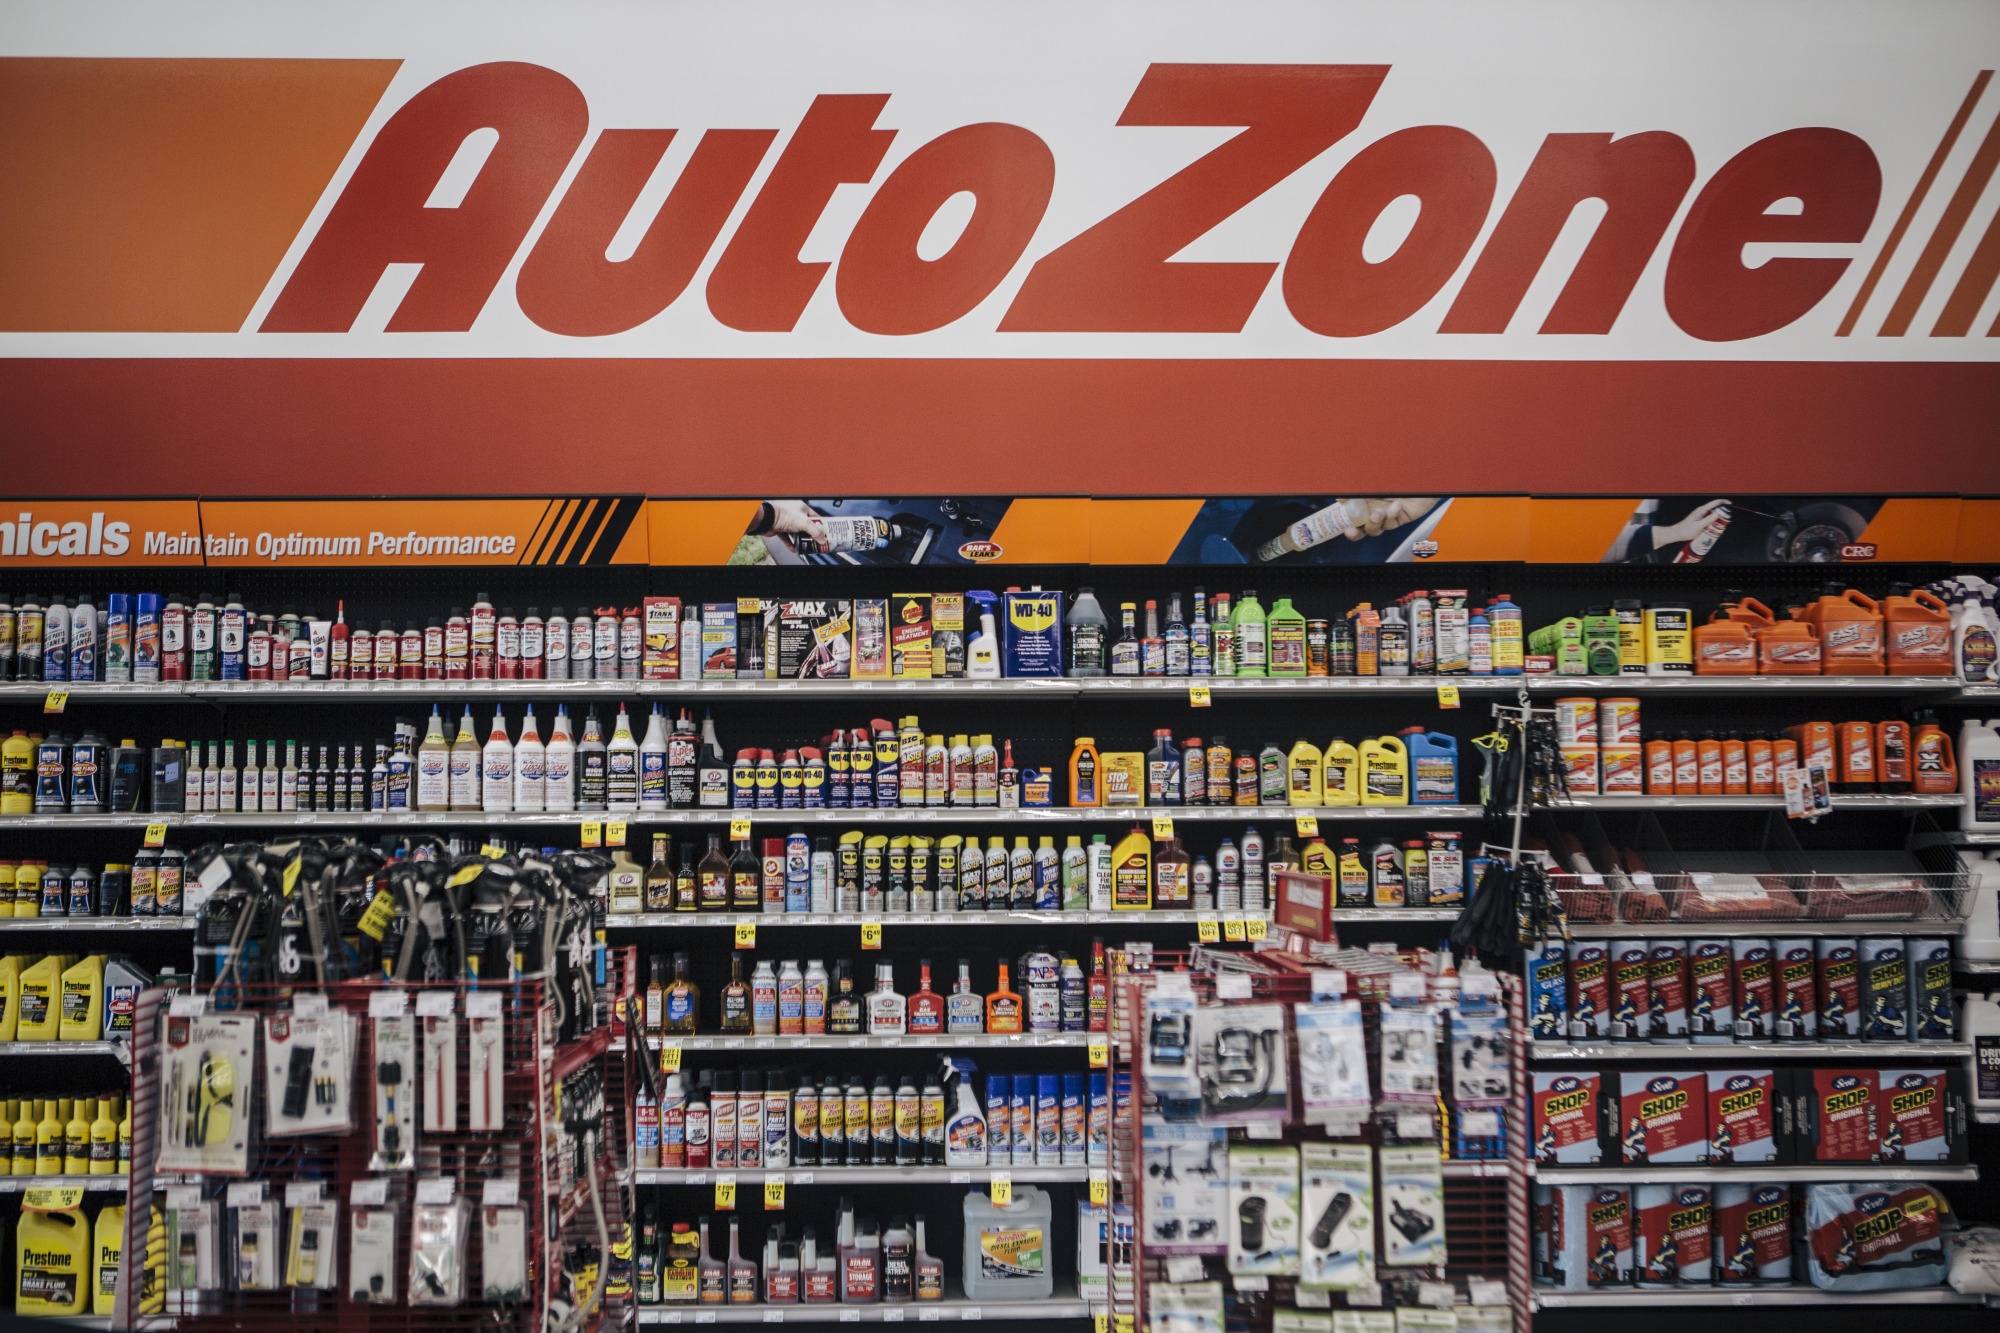 How to Become Auto Zone Vendor